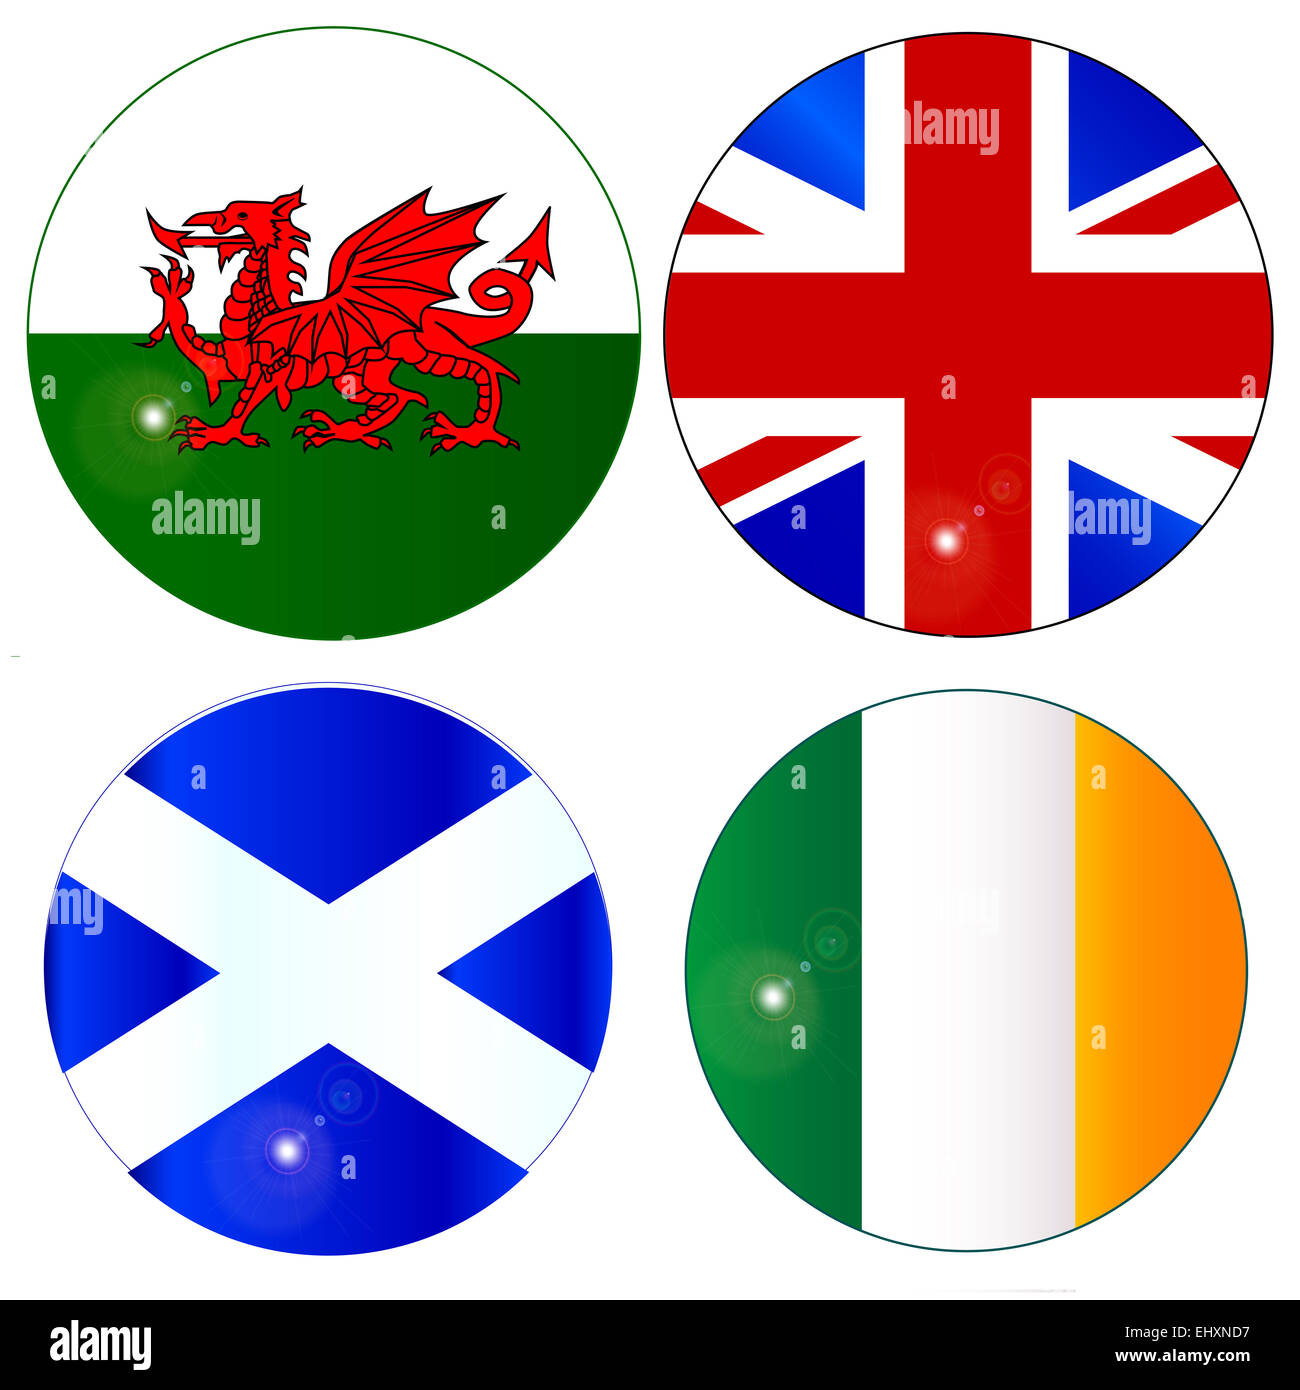 Die offizielle Flagge für Schottland, Wales, Irland, Irland und England als eine Schaltfläche oder ein Abzeichen auf weiß Stockfoto